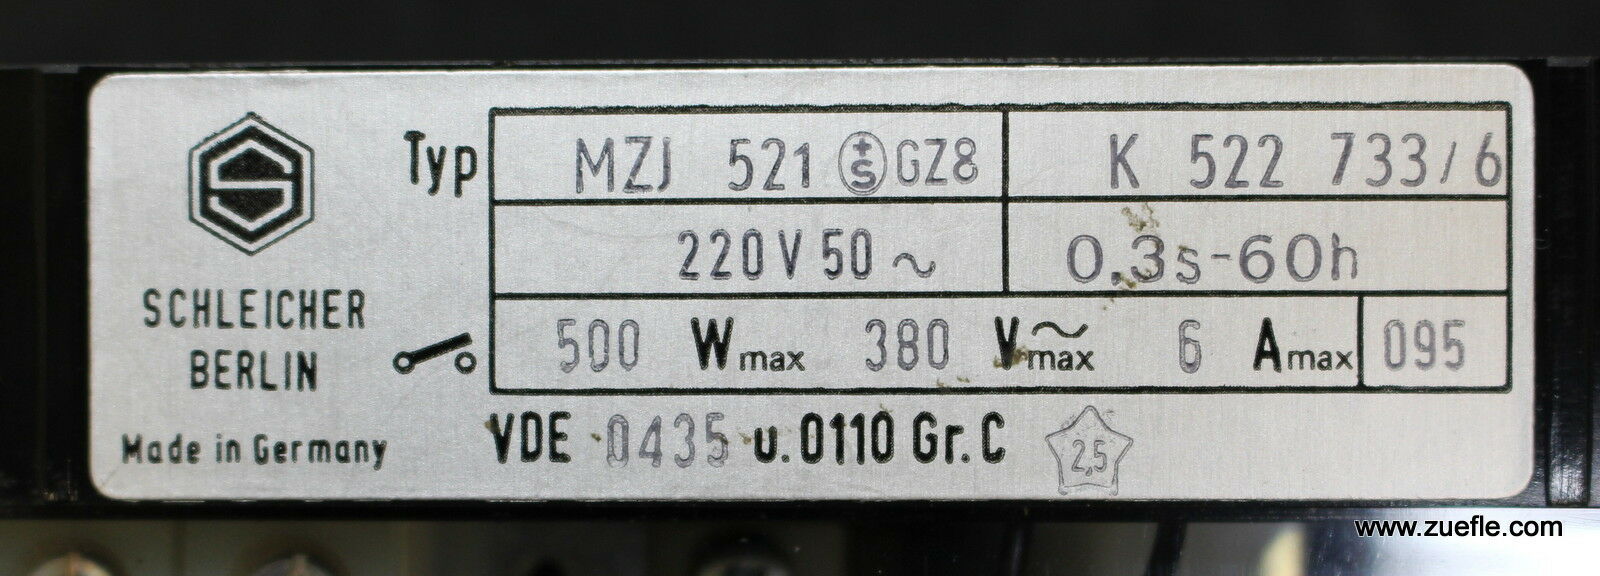 SCHLEICHER Zeitrelais MZJ 521 GZ8 220VAC 50Hz 0,3s…60h 500W 380VACmax. 6Amax